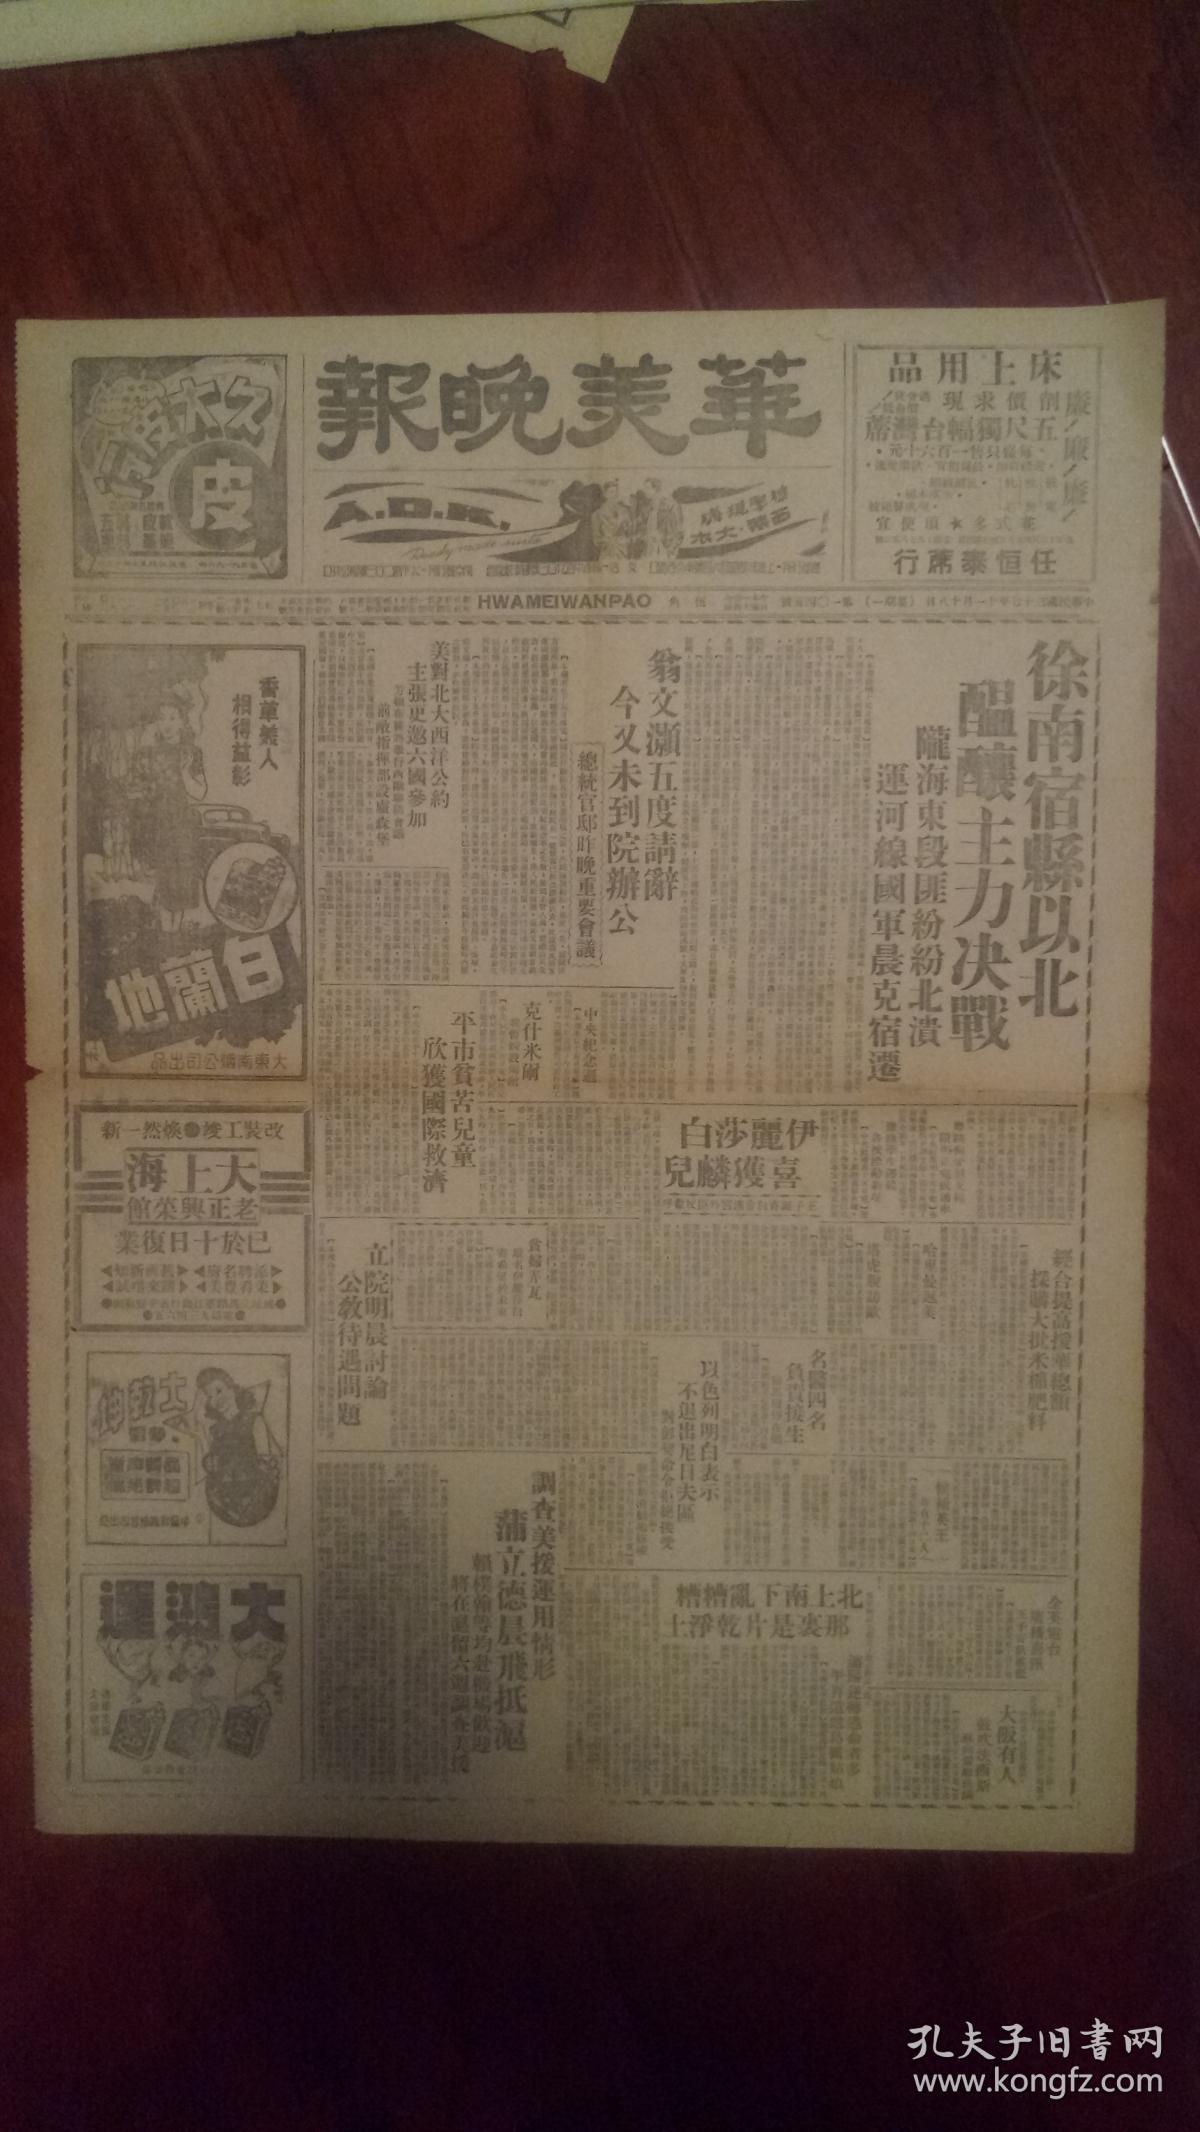 华美晚报，中华民国37年11月18日，第1045号，共两个版。